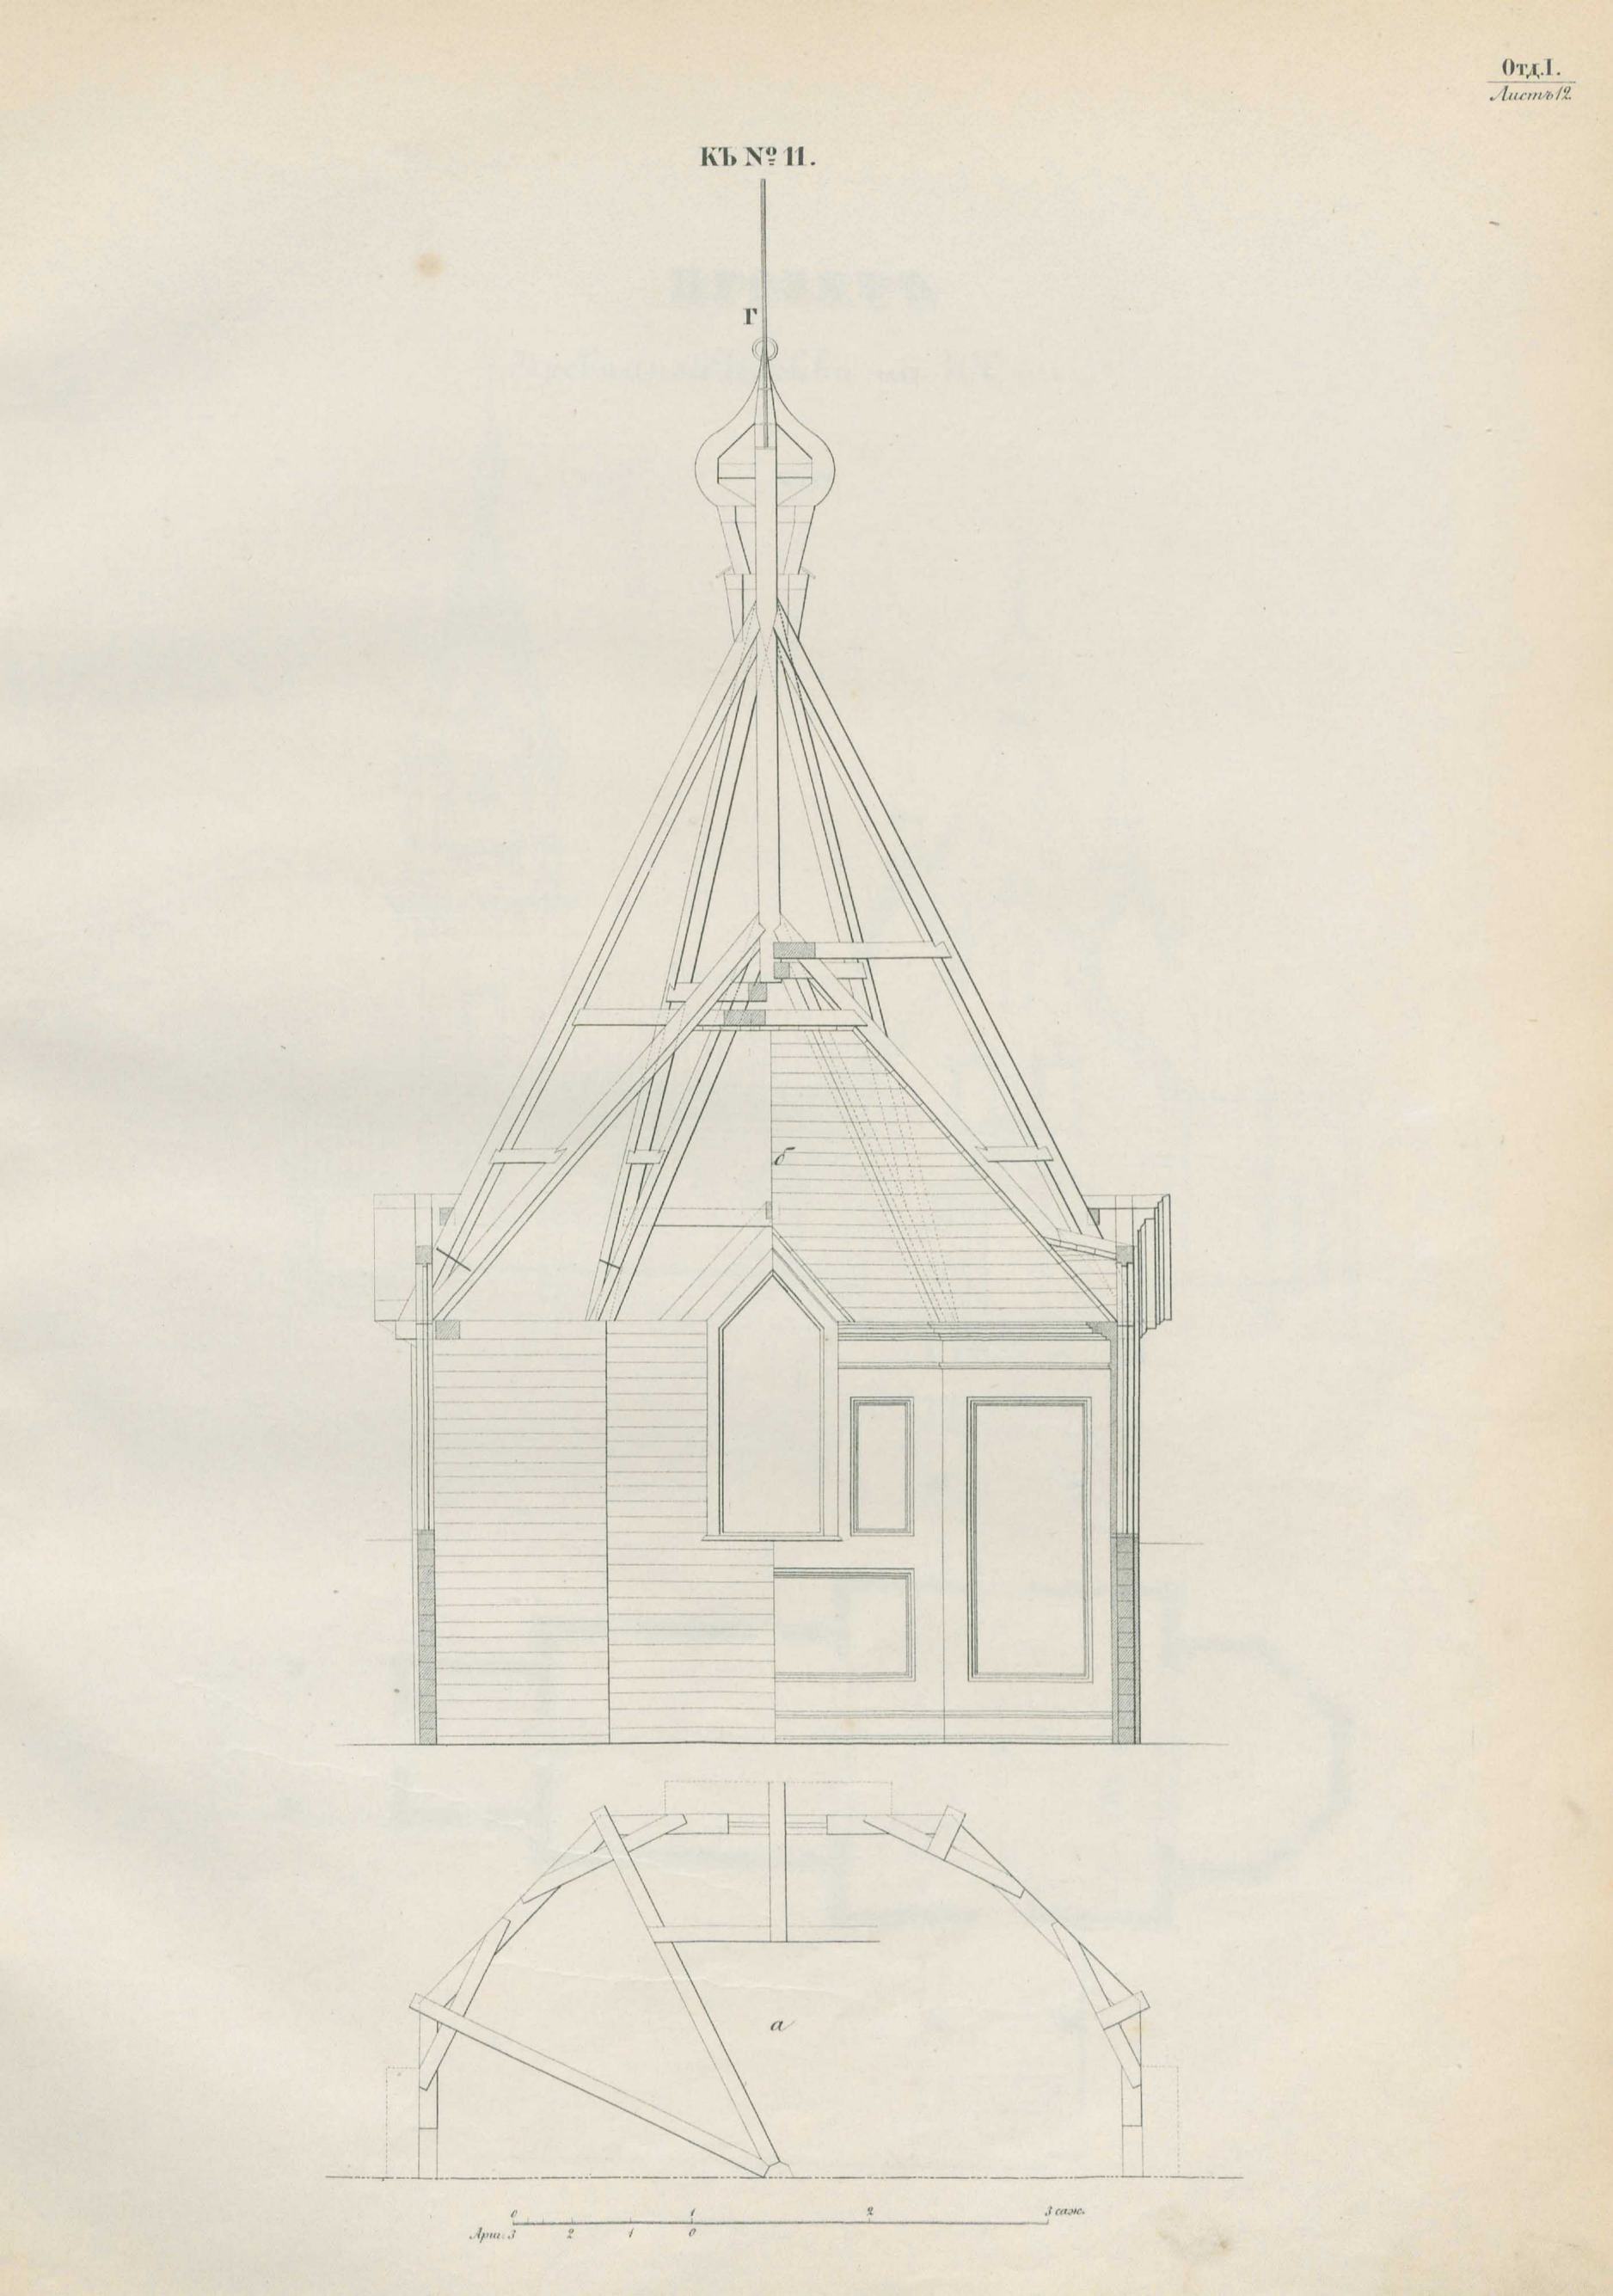 Атлас проектов и чертежей сельских построек, изданный от Департамента сельского хозяйства М.Г.И. — С.-Петербург, 1853